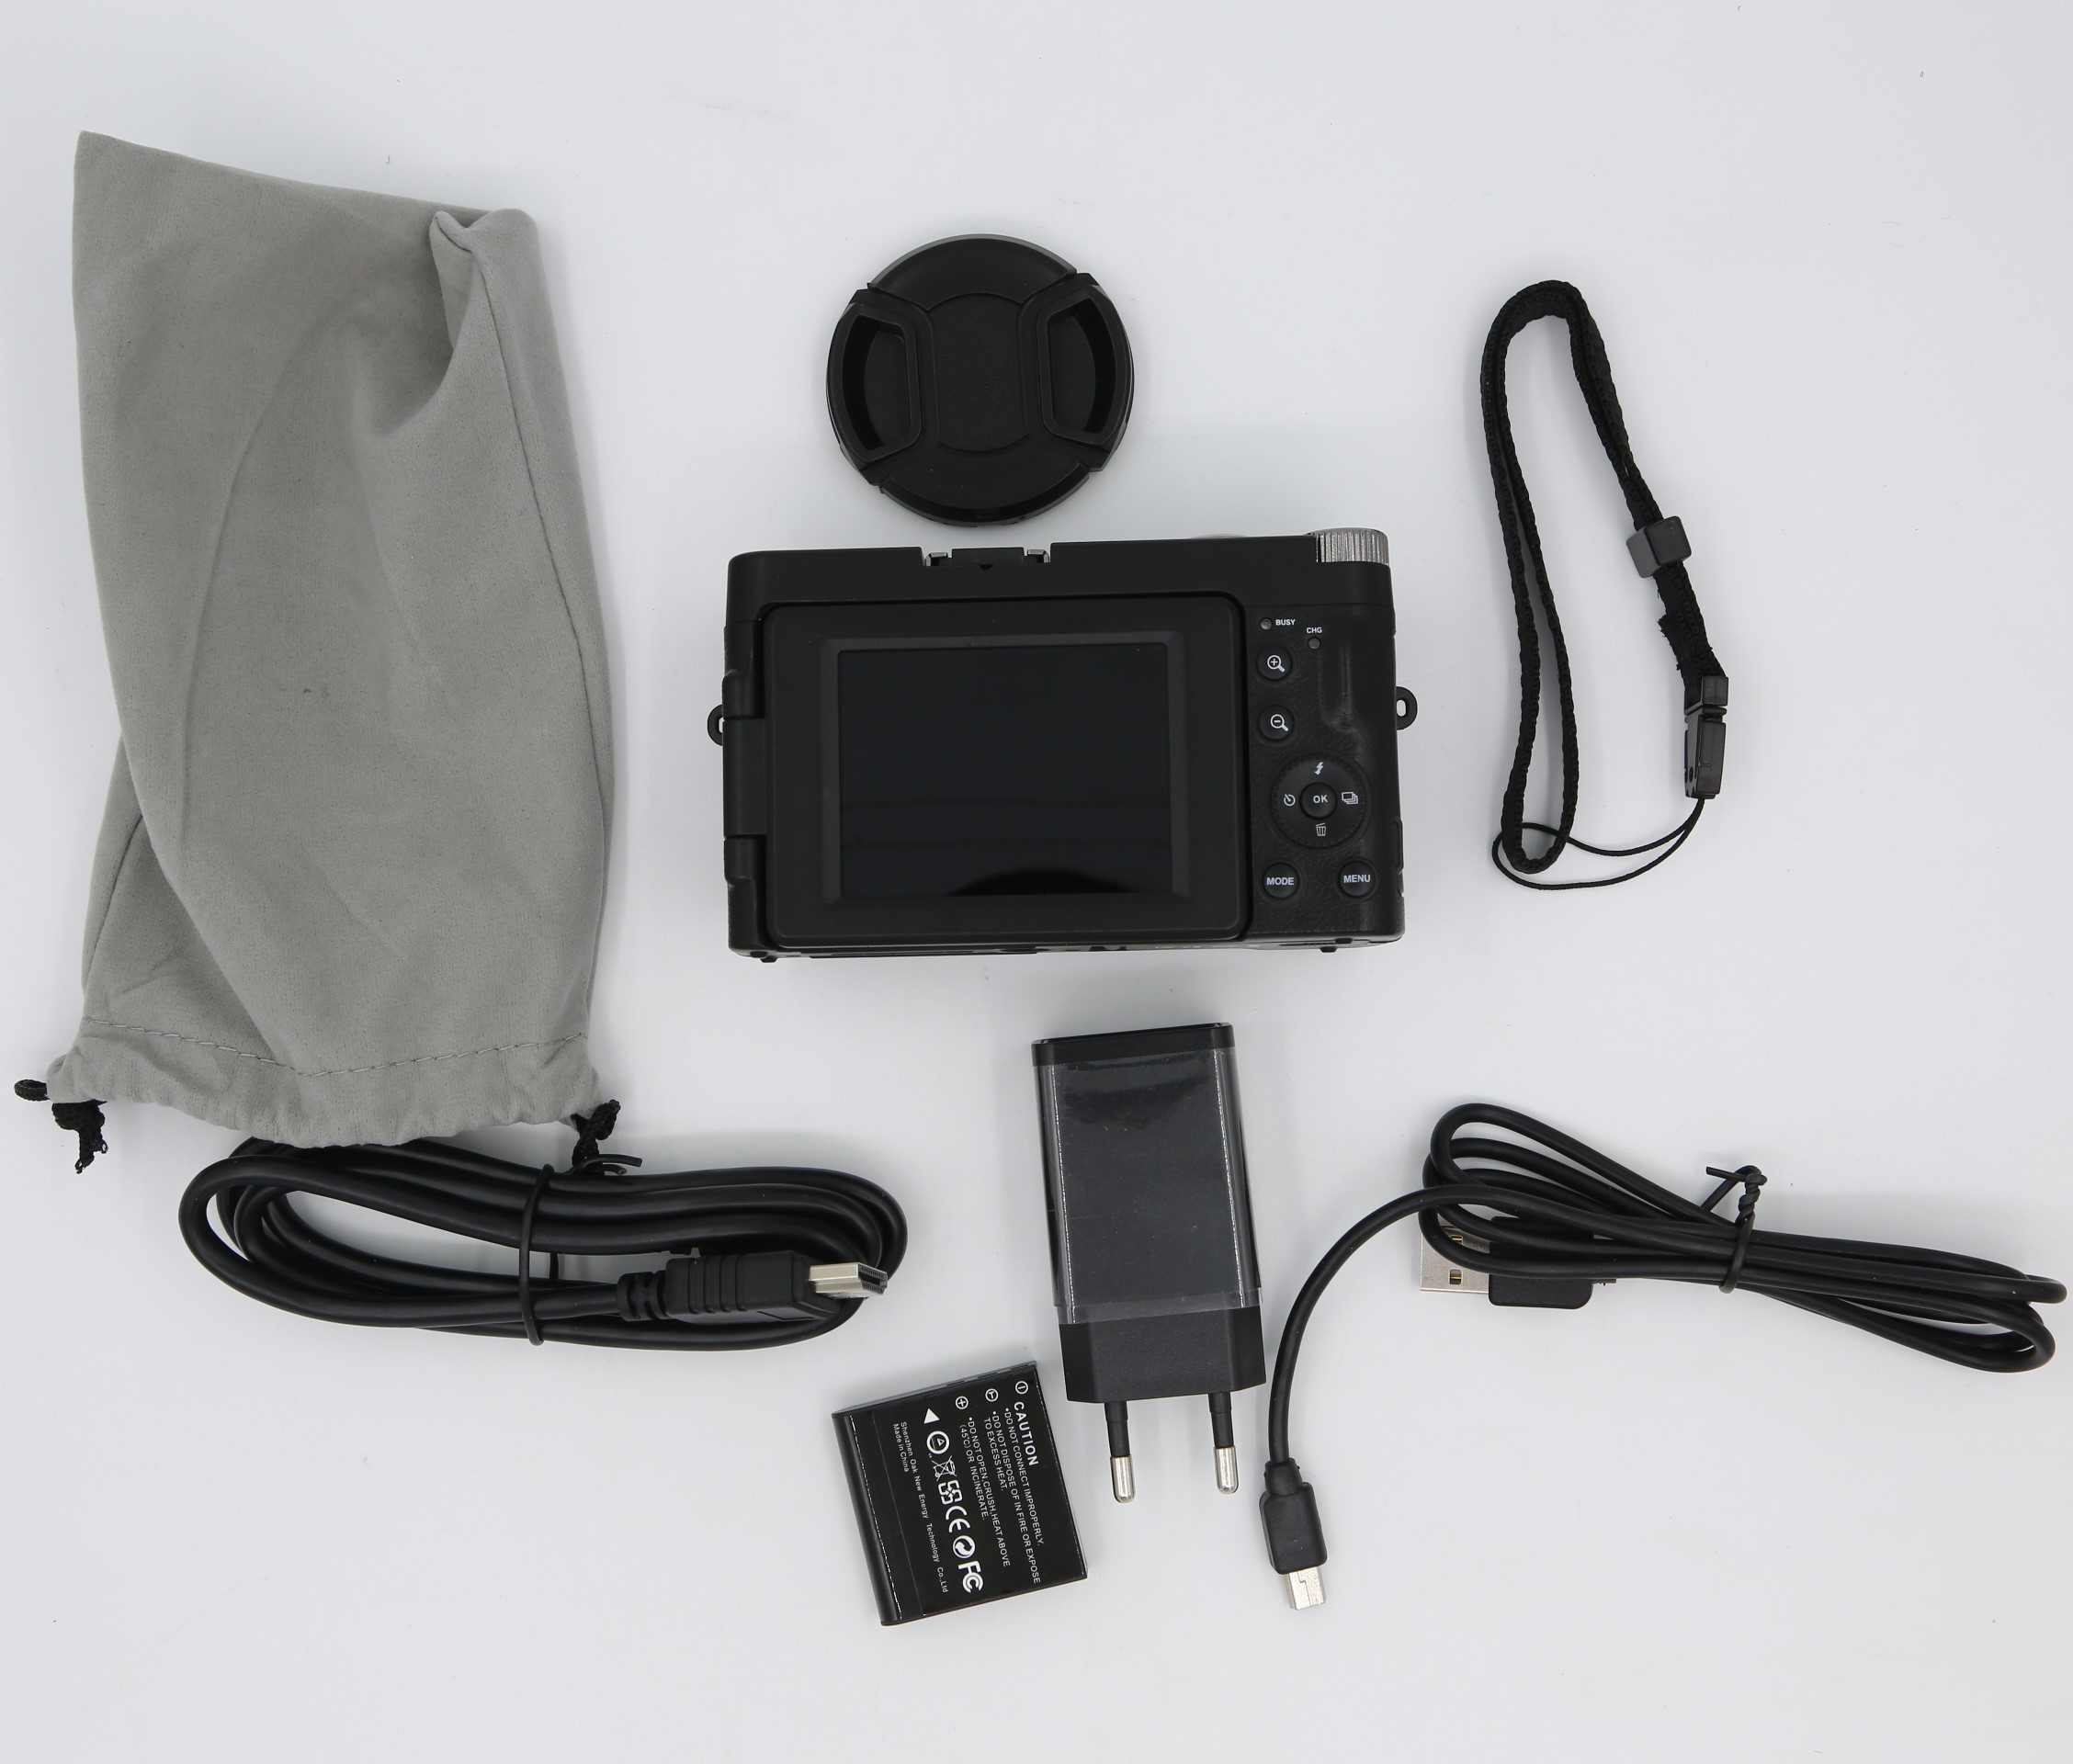 INF 24 mit Zoom schwarz Digitalkamera MP, 16x Digitalkamera HD und 1080p